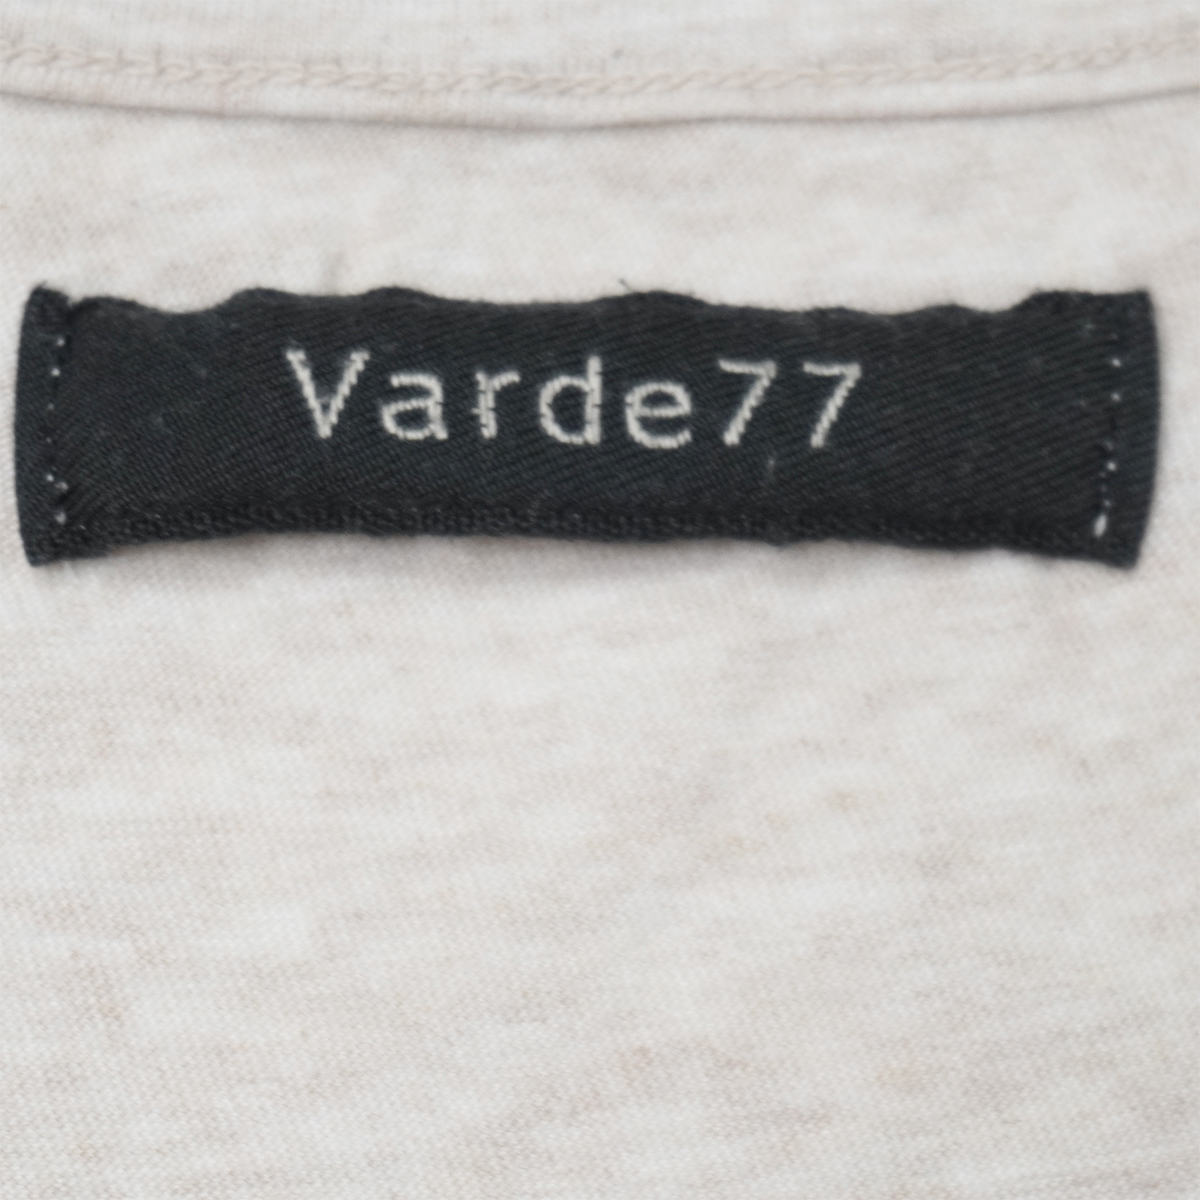 varde77 tank top [1] beige Val te made in Japan 